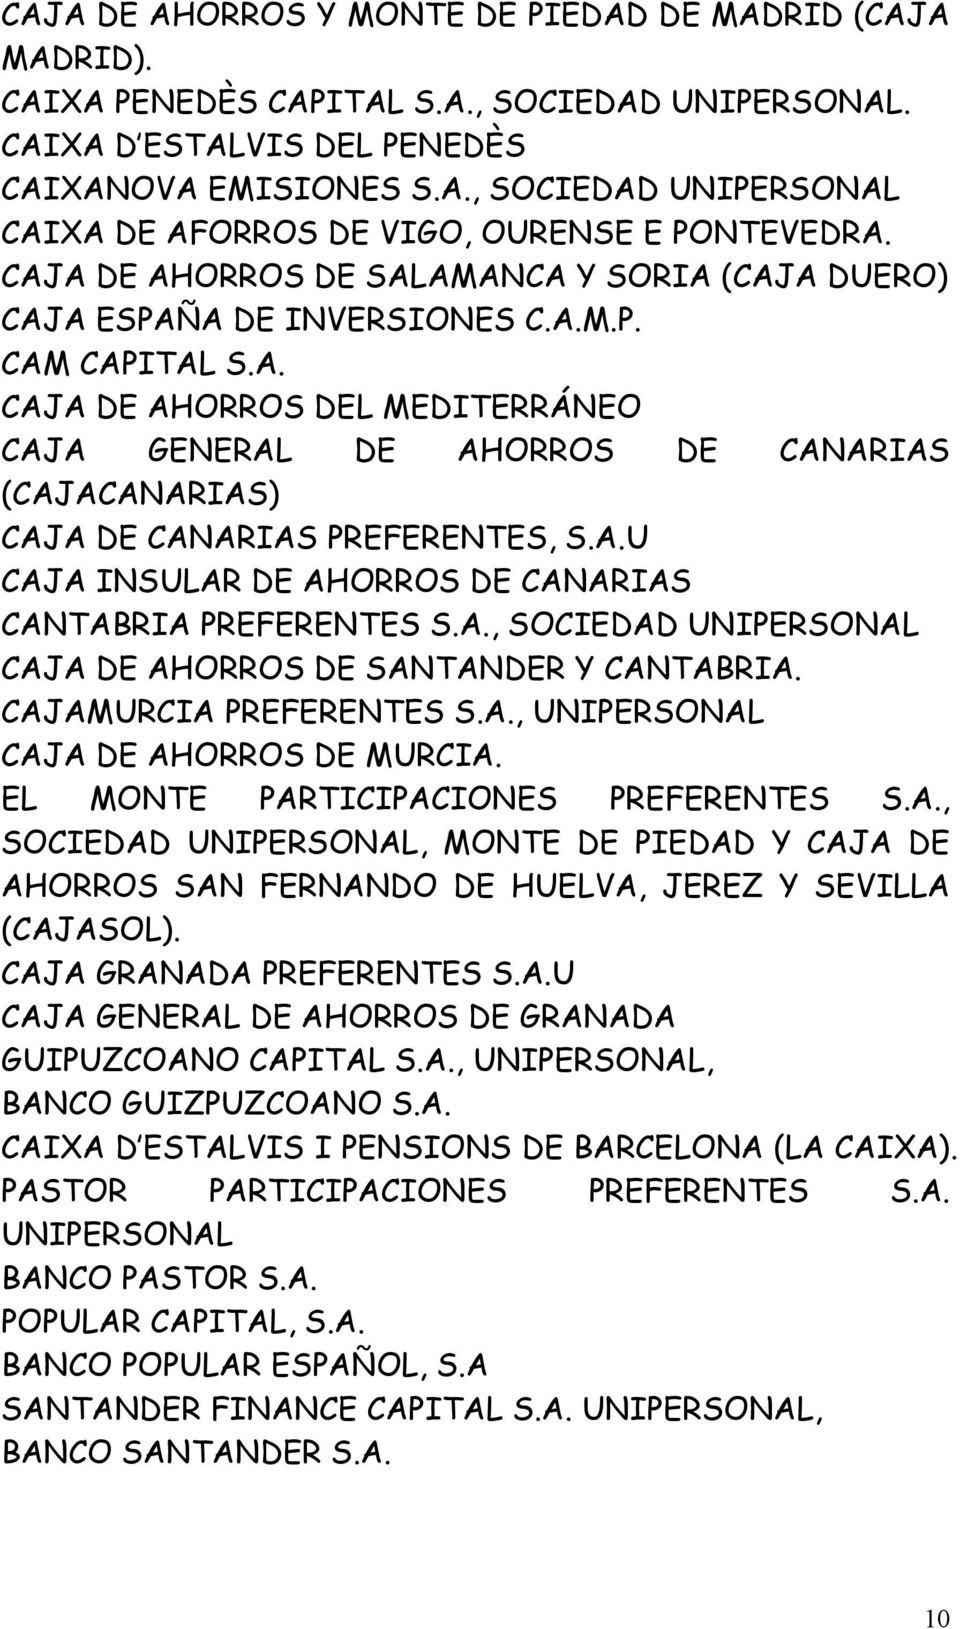 A.U CAJA INSULAR DE AHORROS DE CANARIAS CANTABRIA PREFERENTES S.A., SOCIEDAD UNIPERSONAL CAJA DE AHORROS DE SANTANDER Y CANTABRIA. CAJAMURCIA PREFERENTES S.A., UNIPERSONAL CAJA DE AHORROS DE MURCIA.